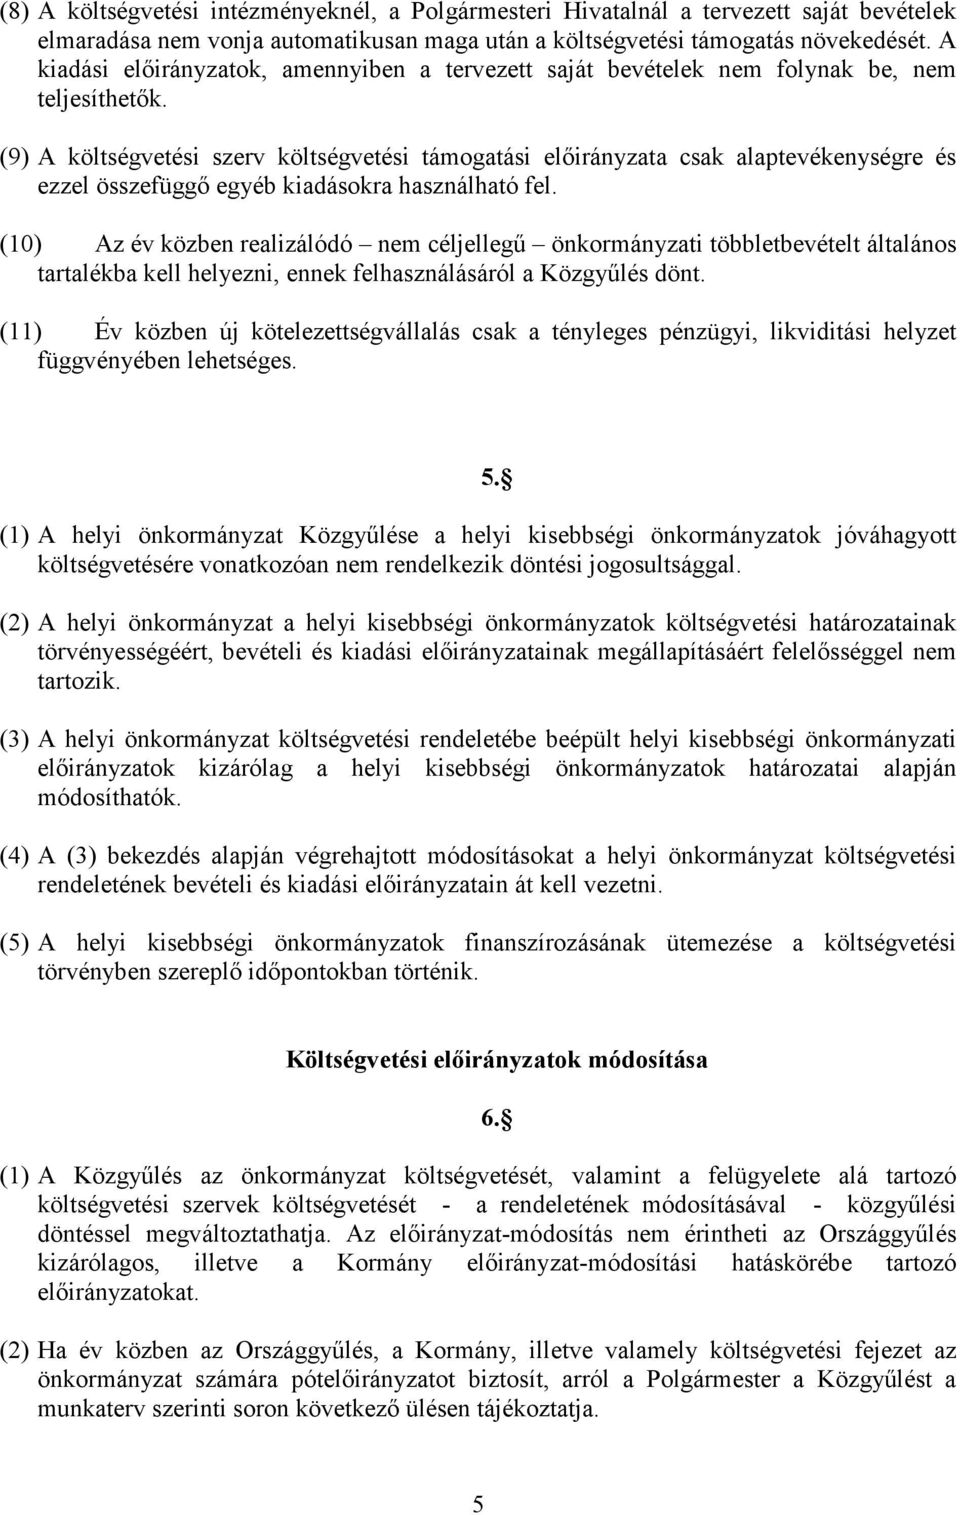 (9) A költségvetési szerv költségvetési támogatási elıirányzata csak alaptevékenységre és ezzel összefüggı egyéb kiadásokra használható fel.